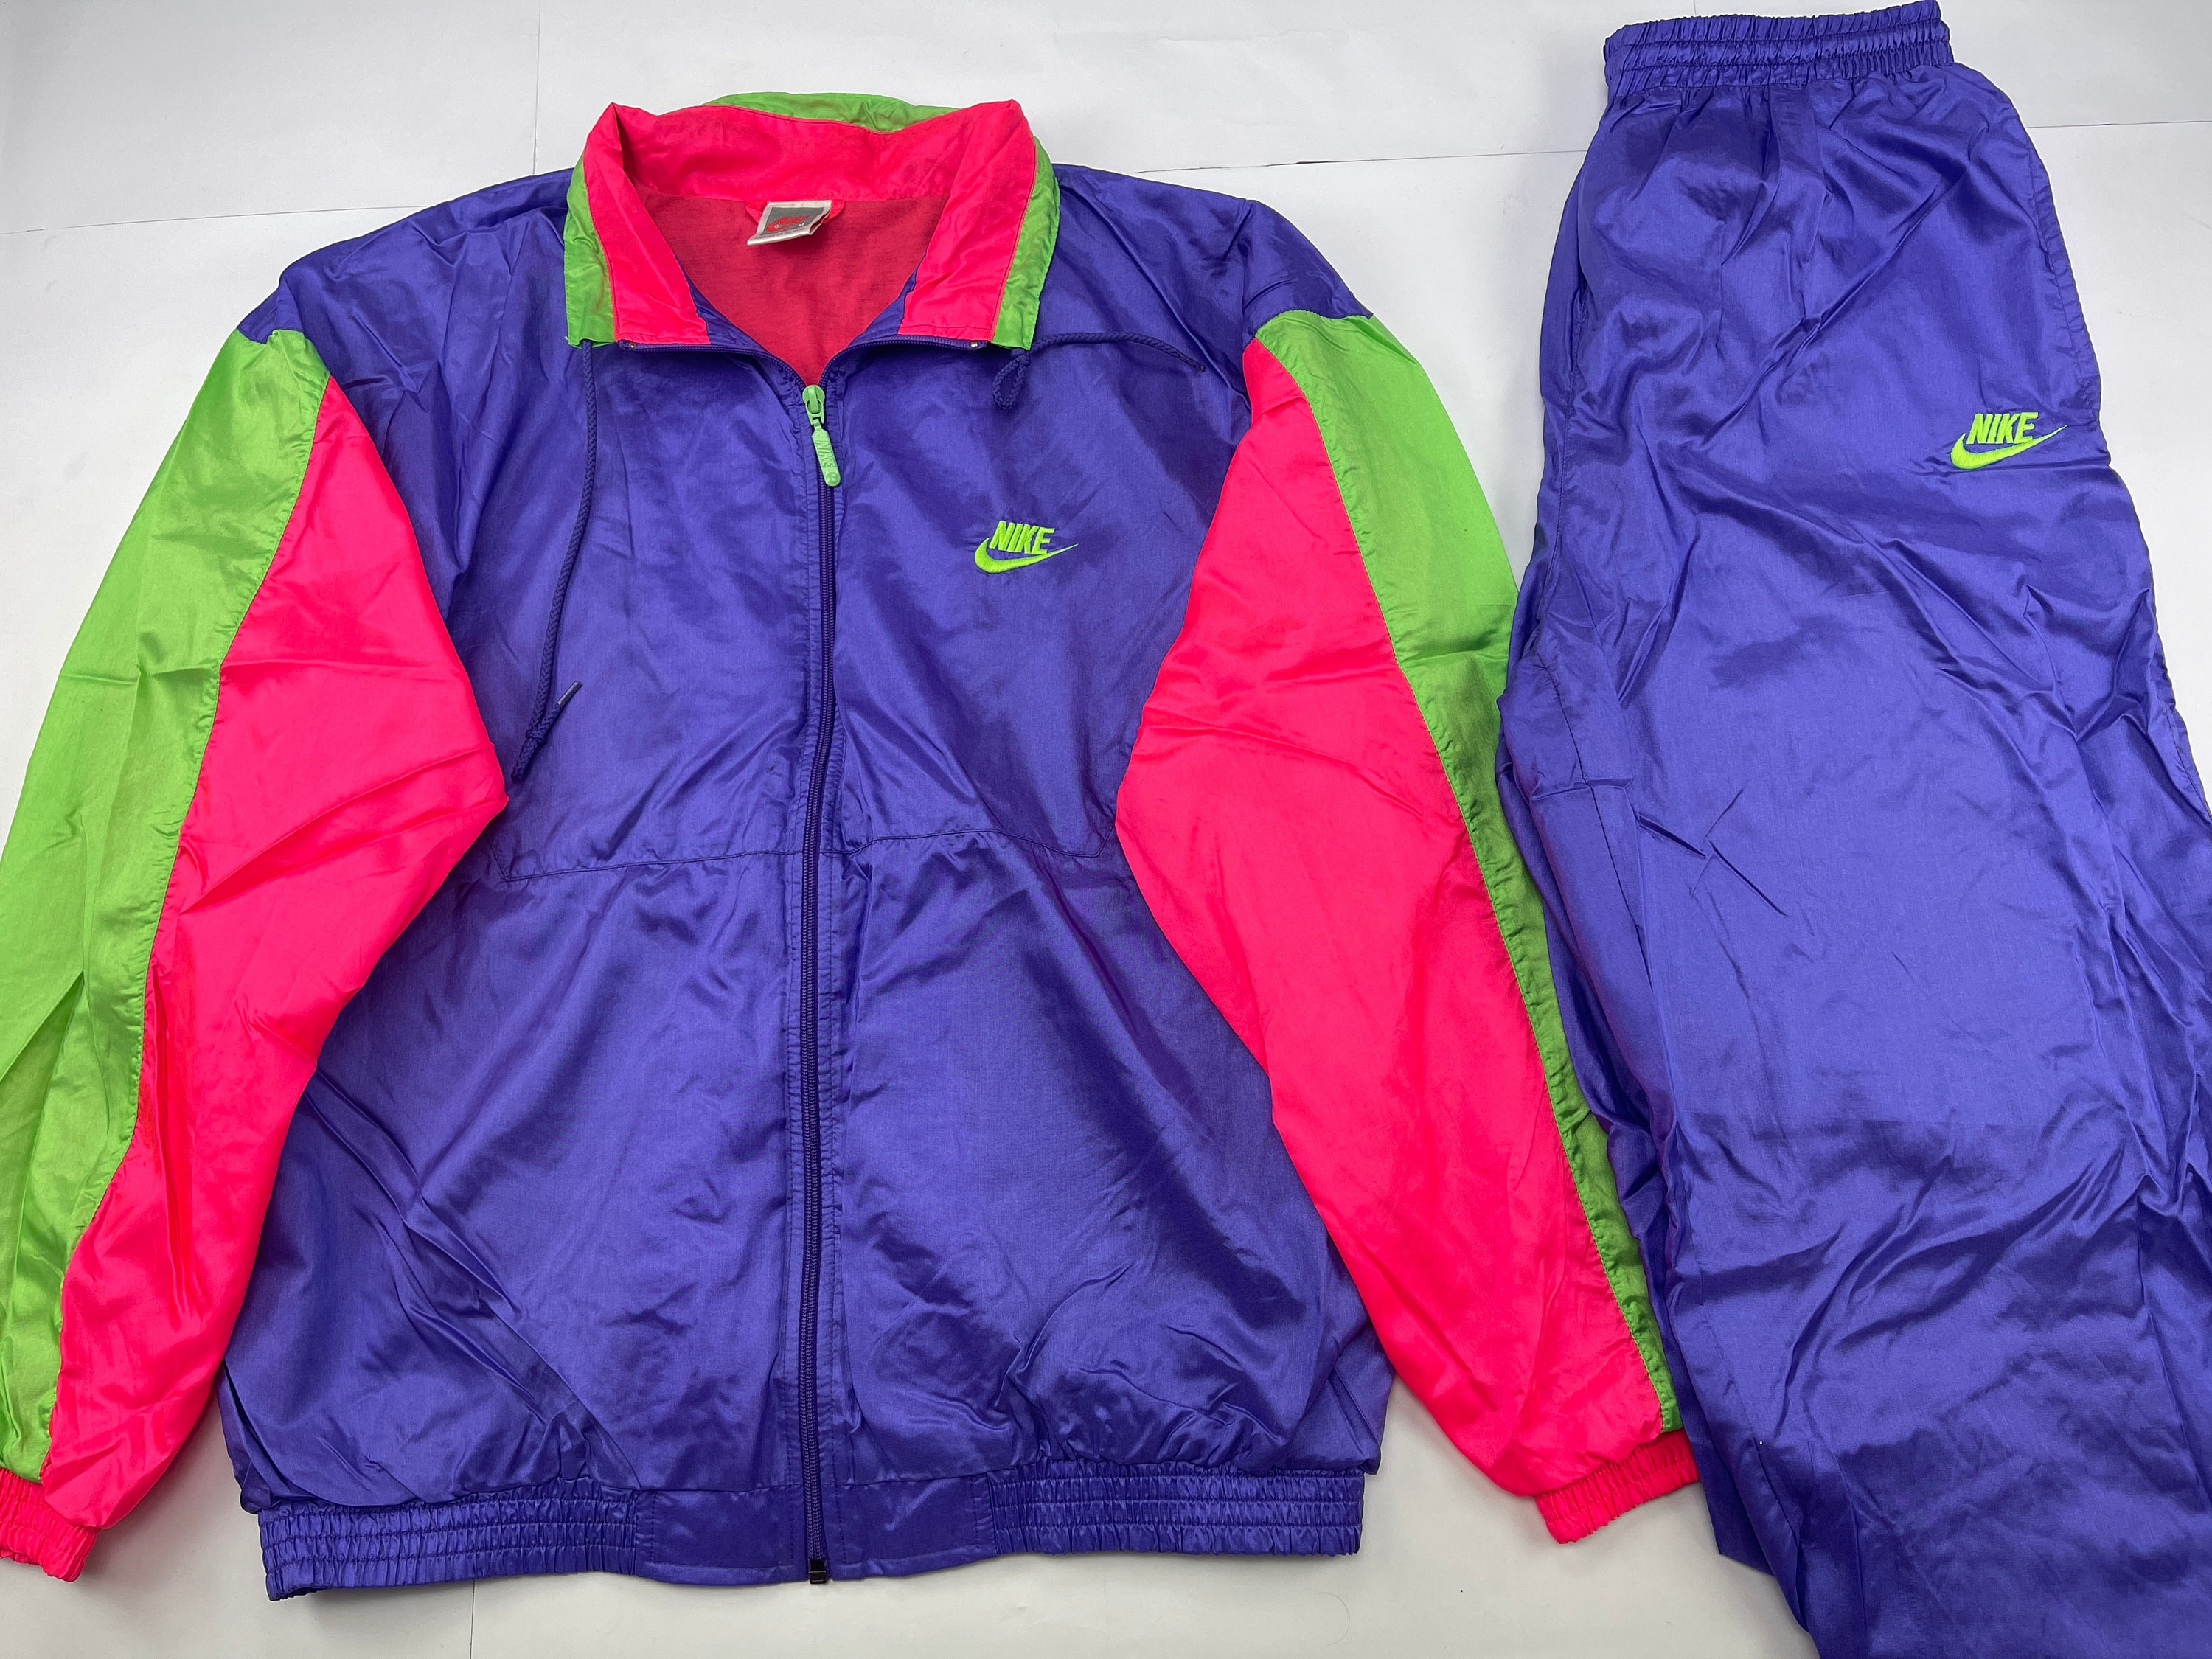 90s Vintage NIKE Reversible Jacket 刺繍 ナイロンジャケット 【着後レビューで 送料無料】